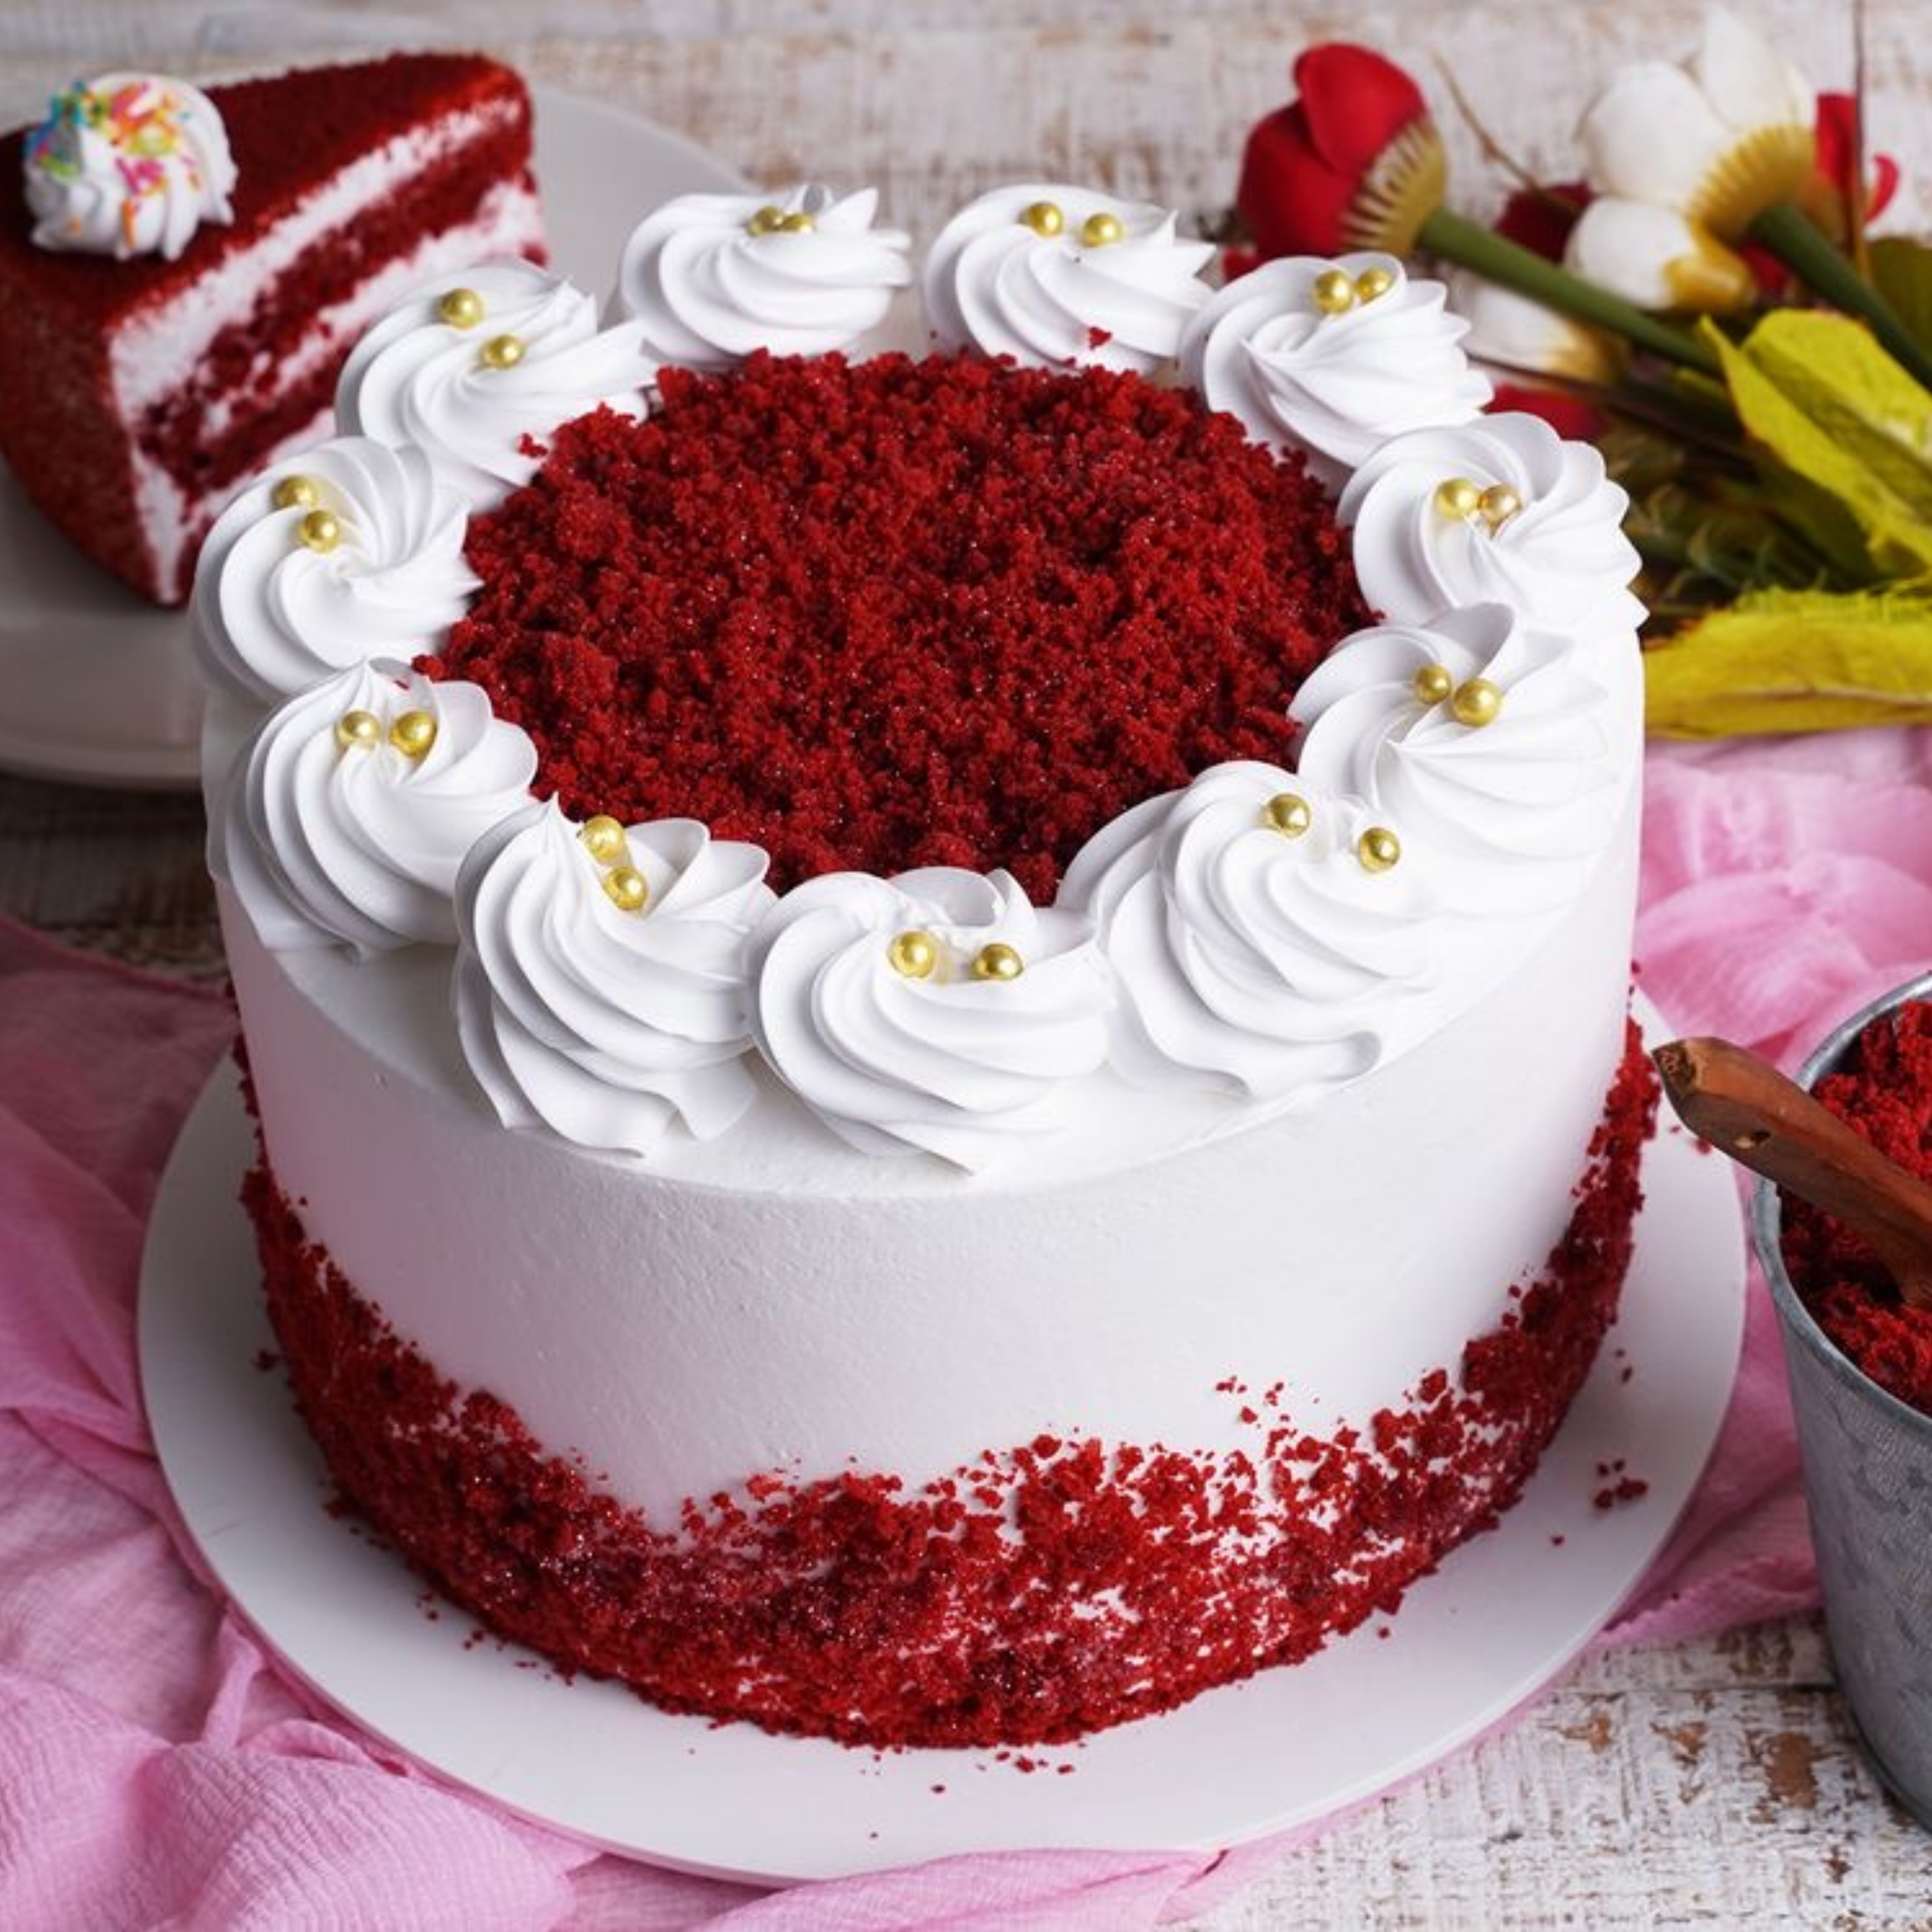 Homemade Red Velvet Cake | Easy Weeknight Recipes